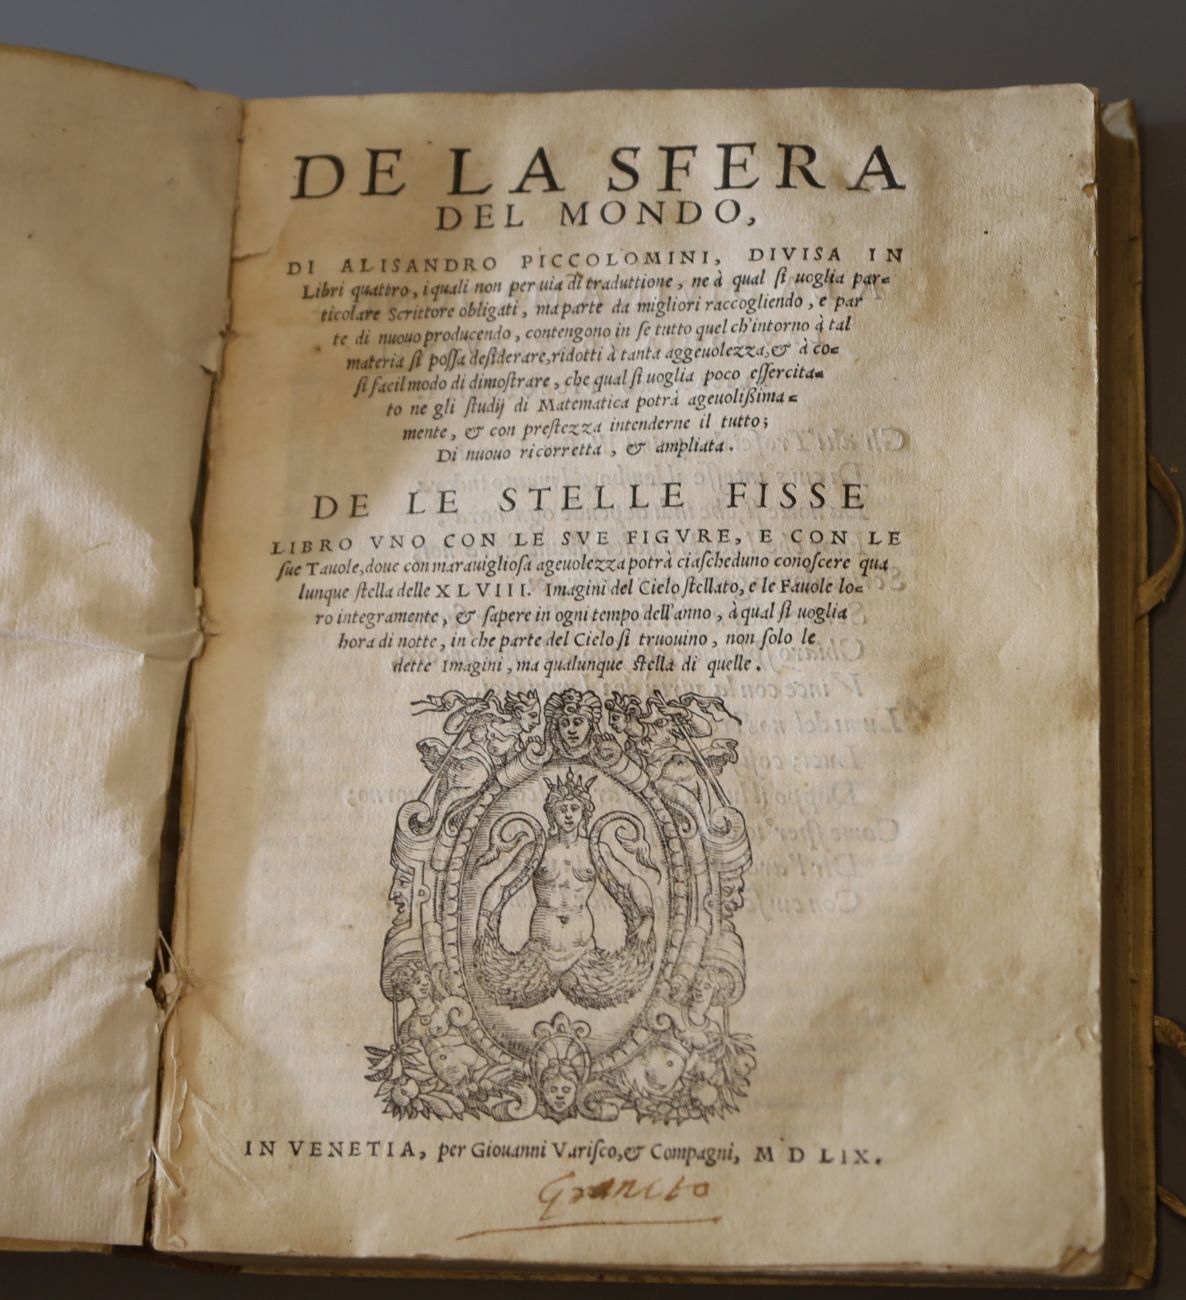 Piccolomini, Alessandro (1508-78) - De le Stelle Fisse Uno and De le Sfera del Mondo, 2 vols in one, - Image 3 of 3